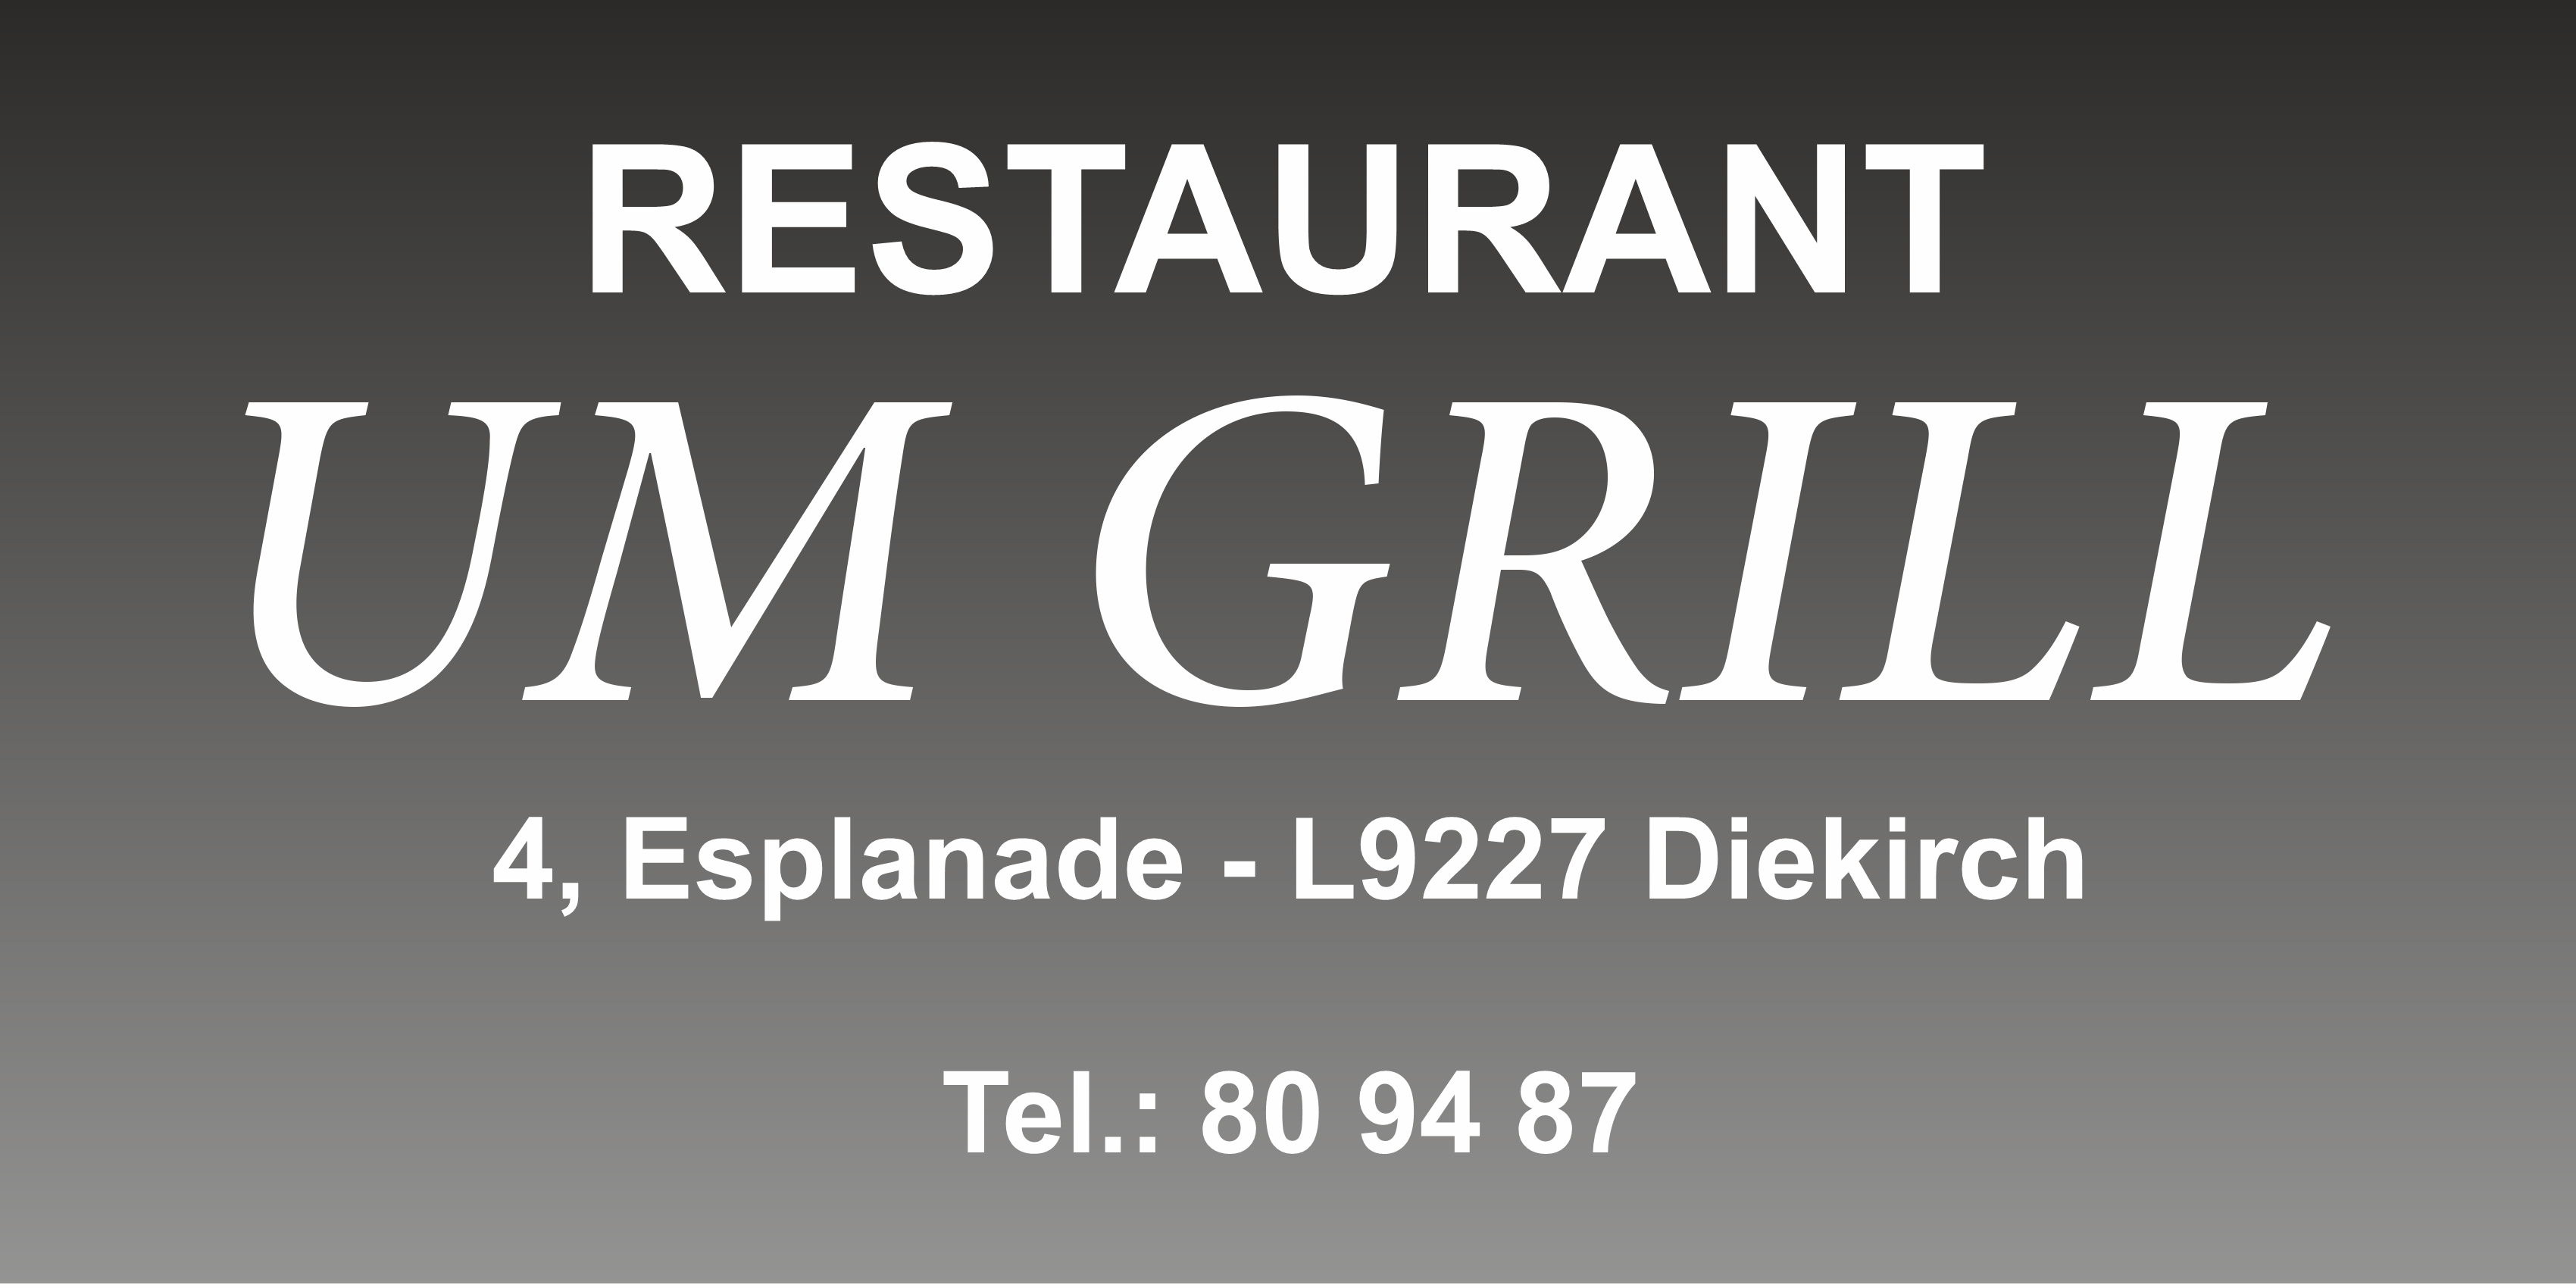 Restaurant Um Grill